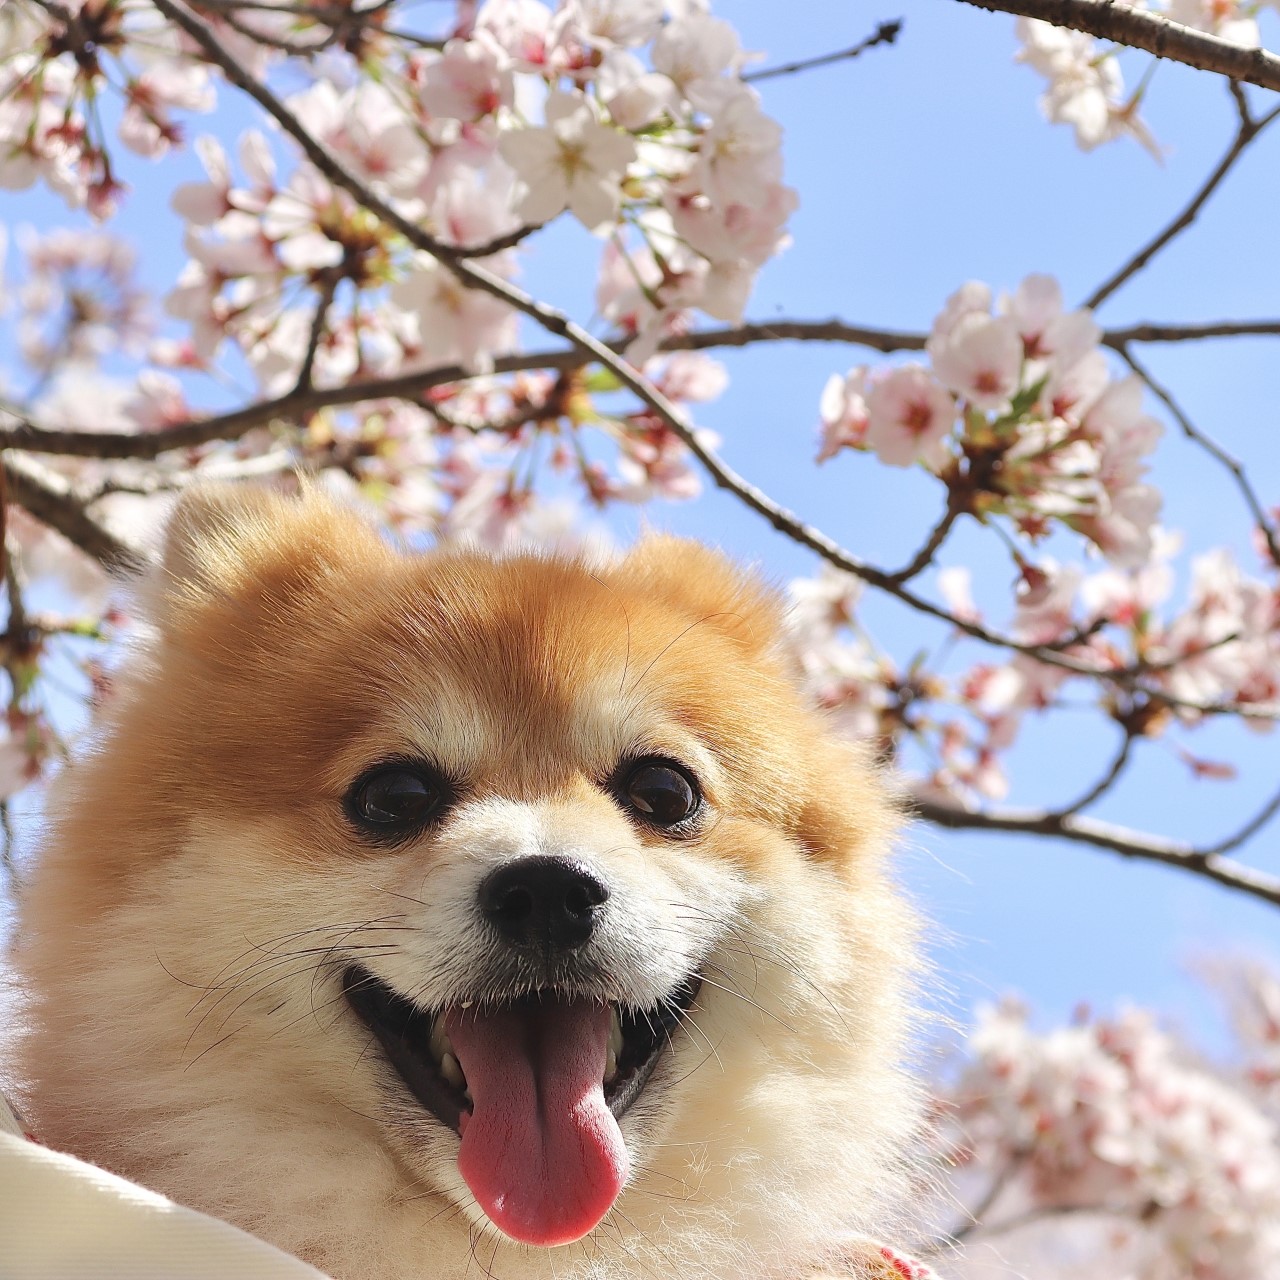 桜の木の下で舌を出して微笑んでいるポメラニアン。